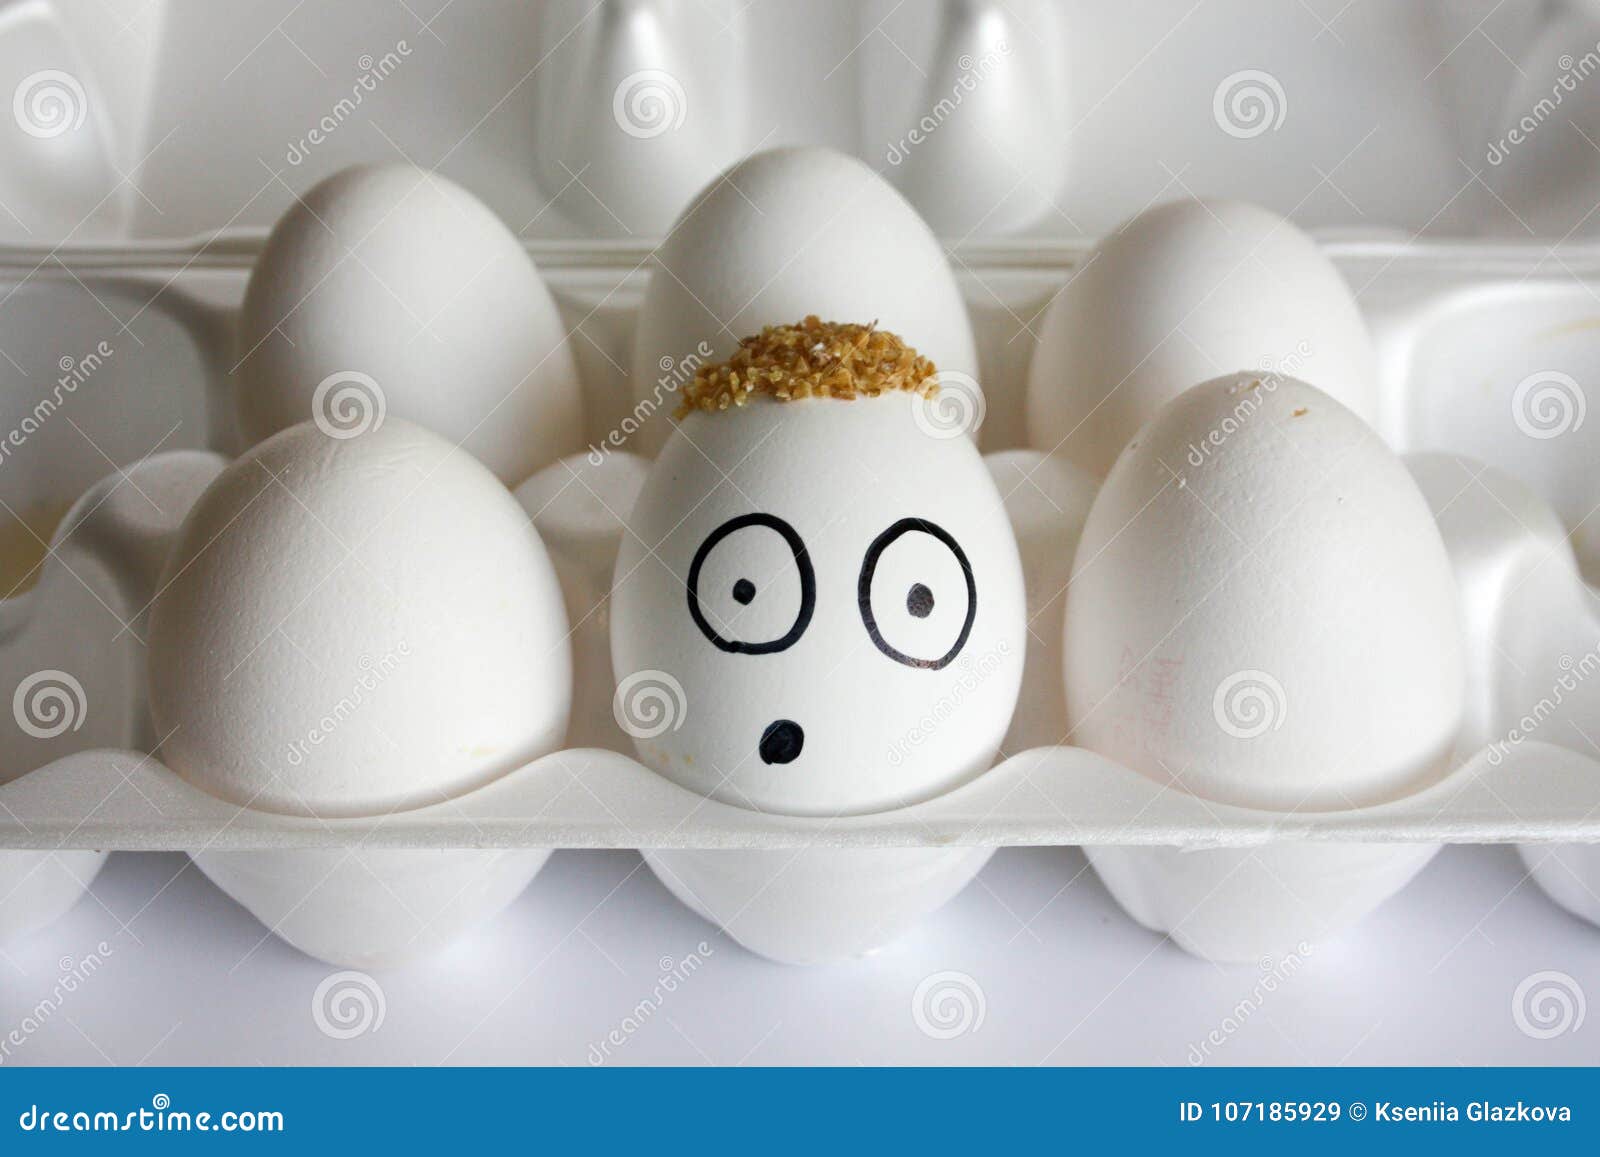 Concepto Del Huevos Son Divertidos Y Imagen archivo - Imagen de cara, pollo: 107185929